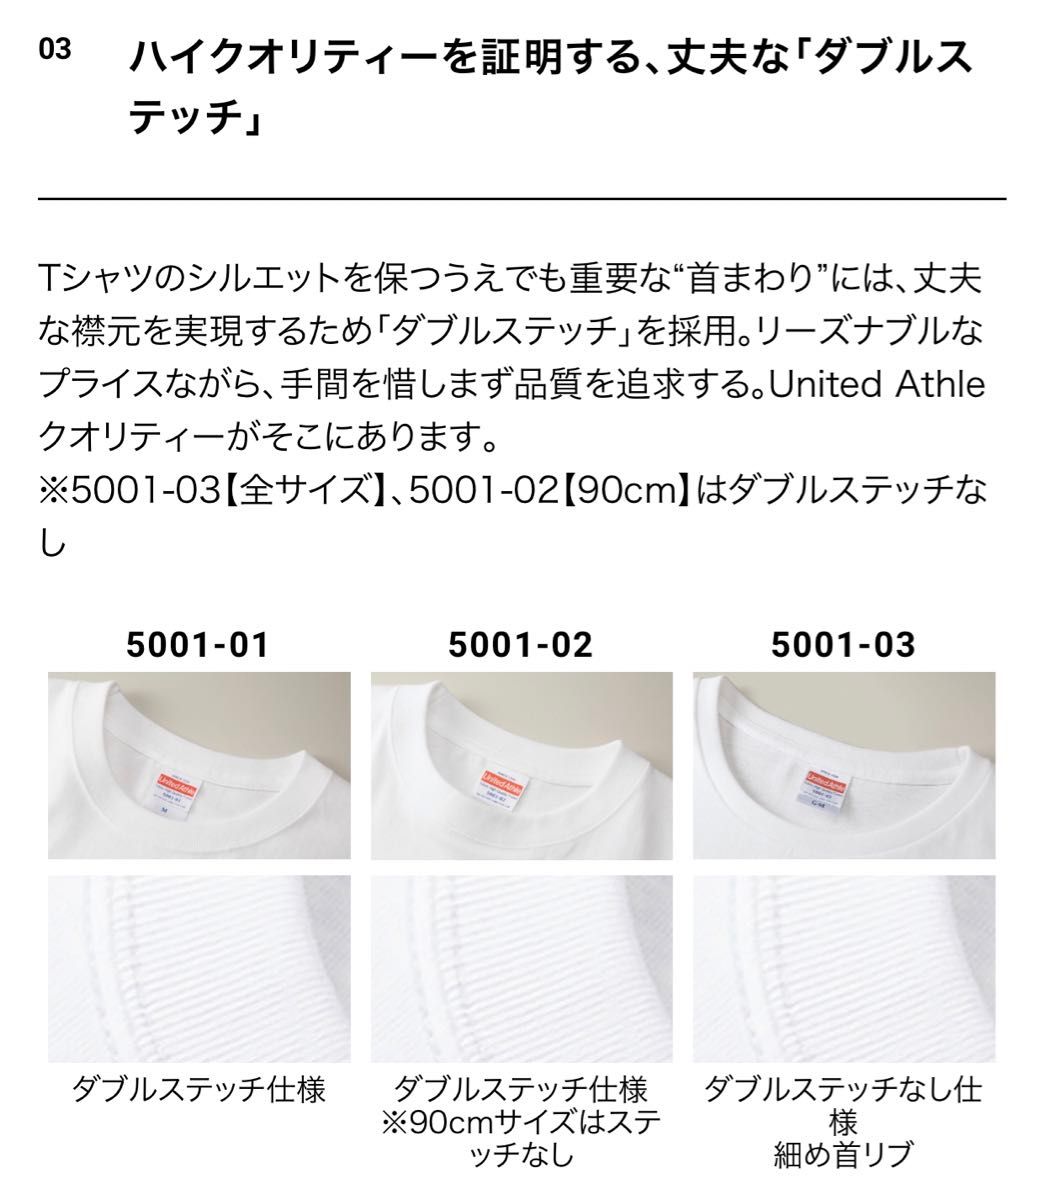 Tシャツ 半袖 5.6オンス ハイクオリティー【5001-01】L ブラック 綿100%